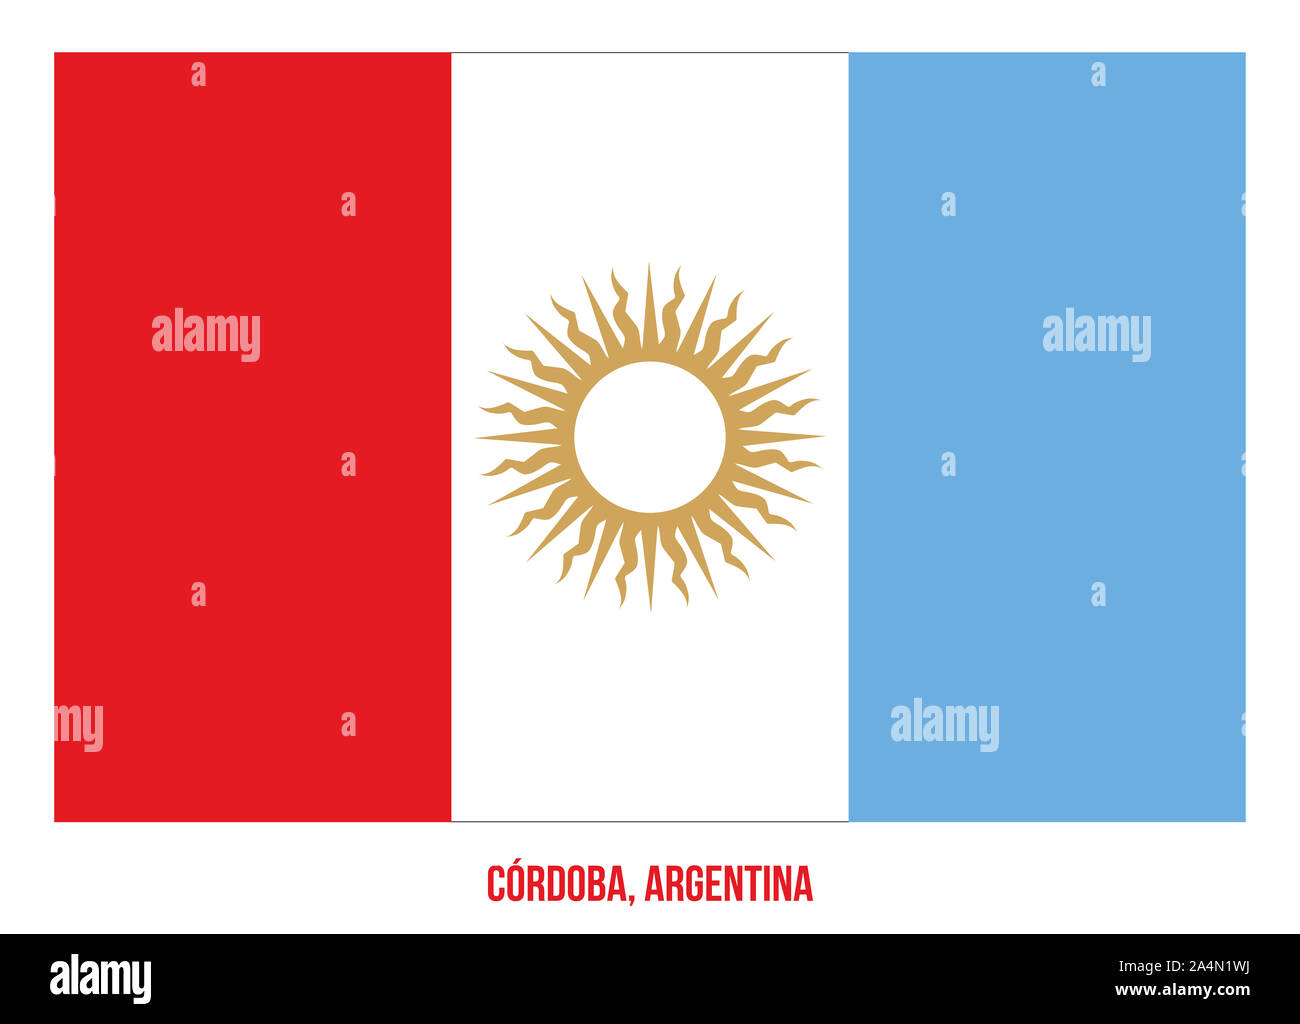 Cordoba Flag Vector Illustration on White Background. Flag of Argentina Provinces. Stock Photo